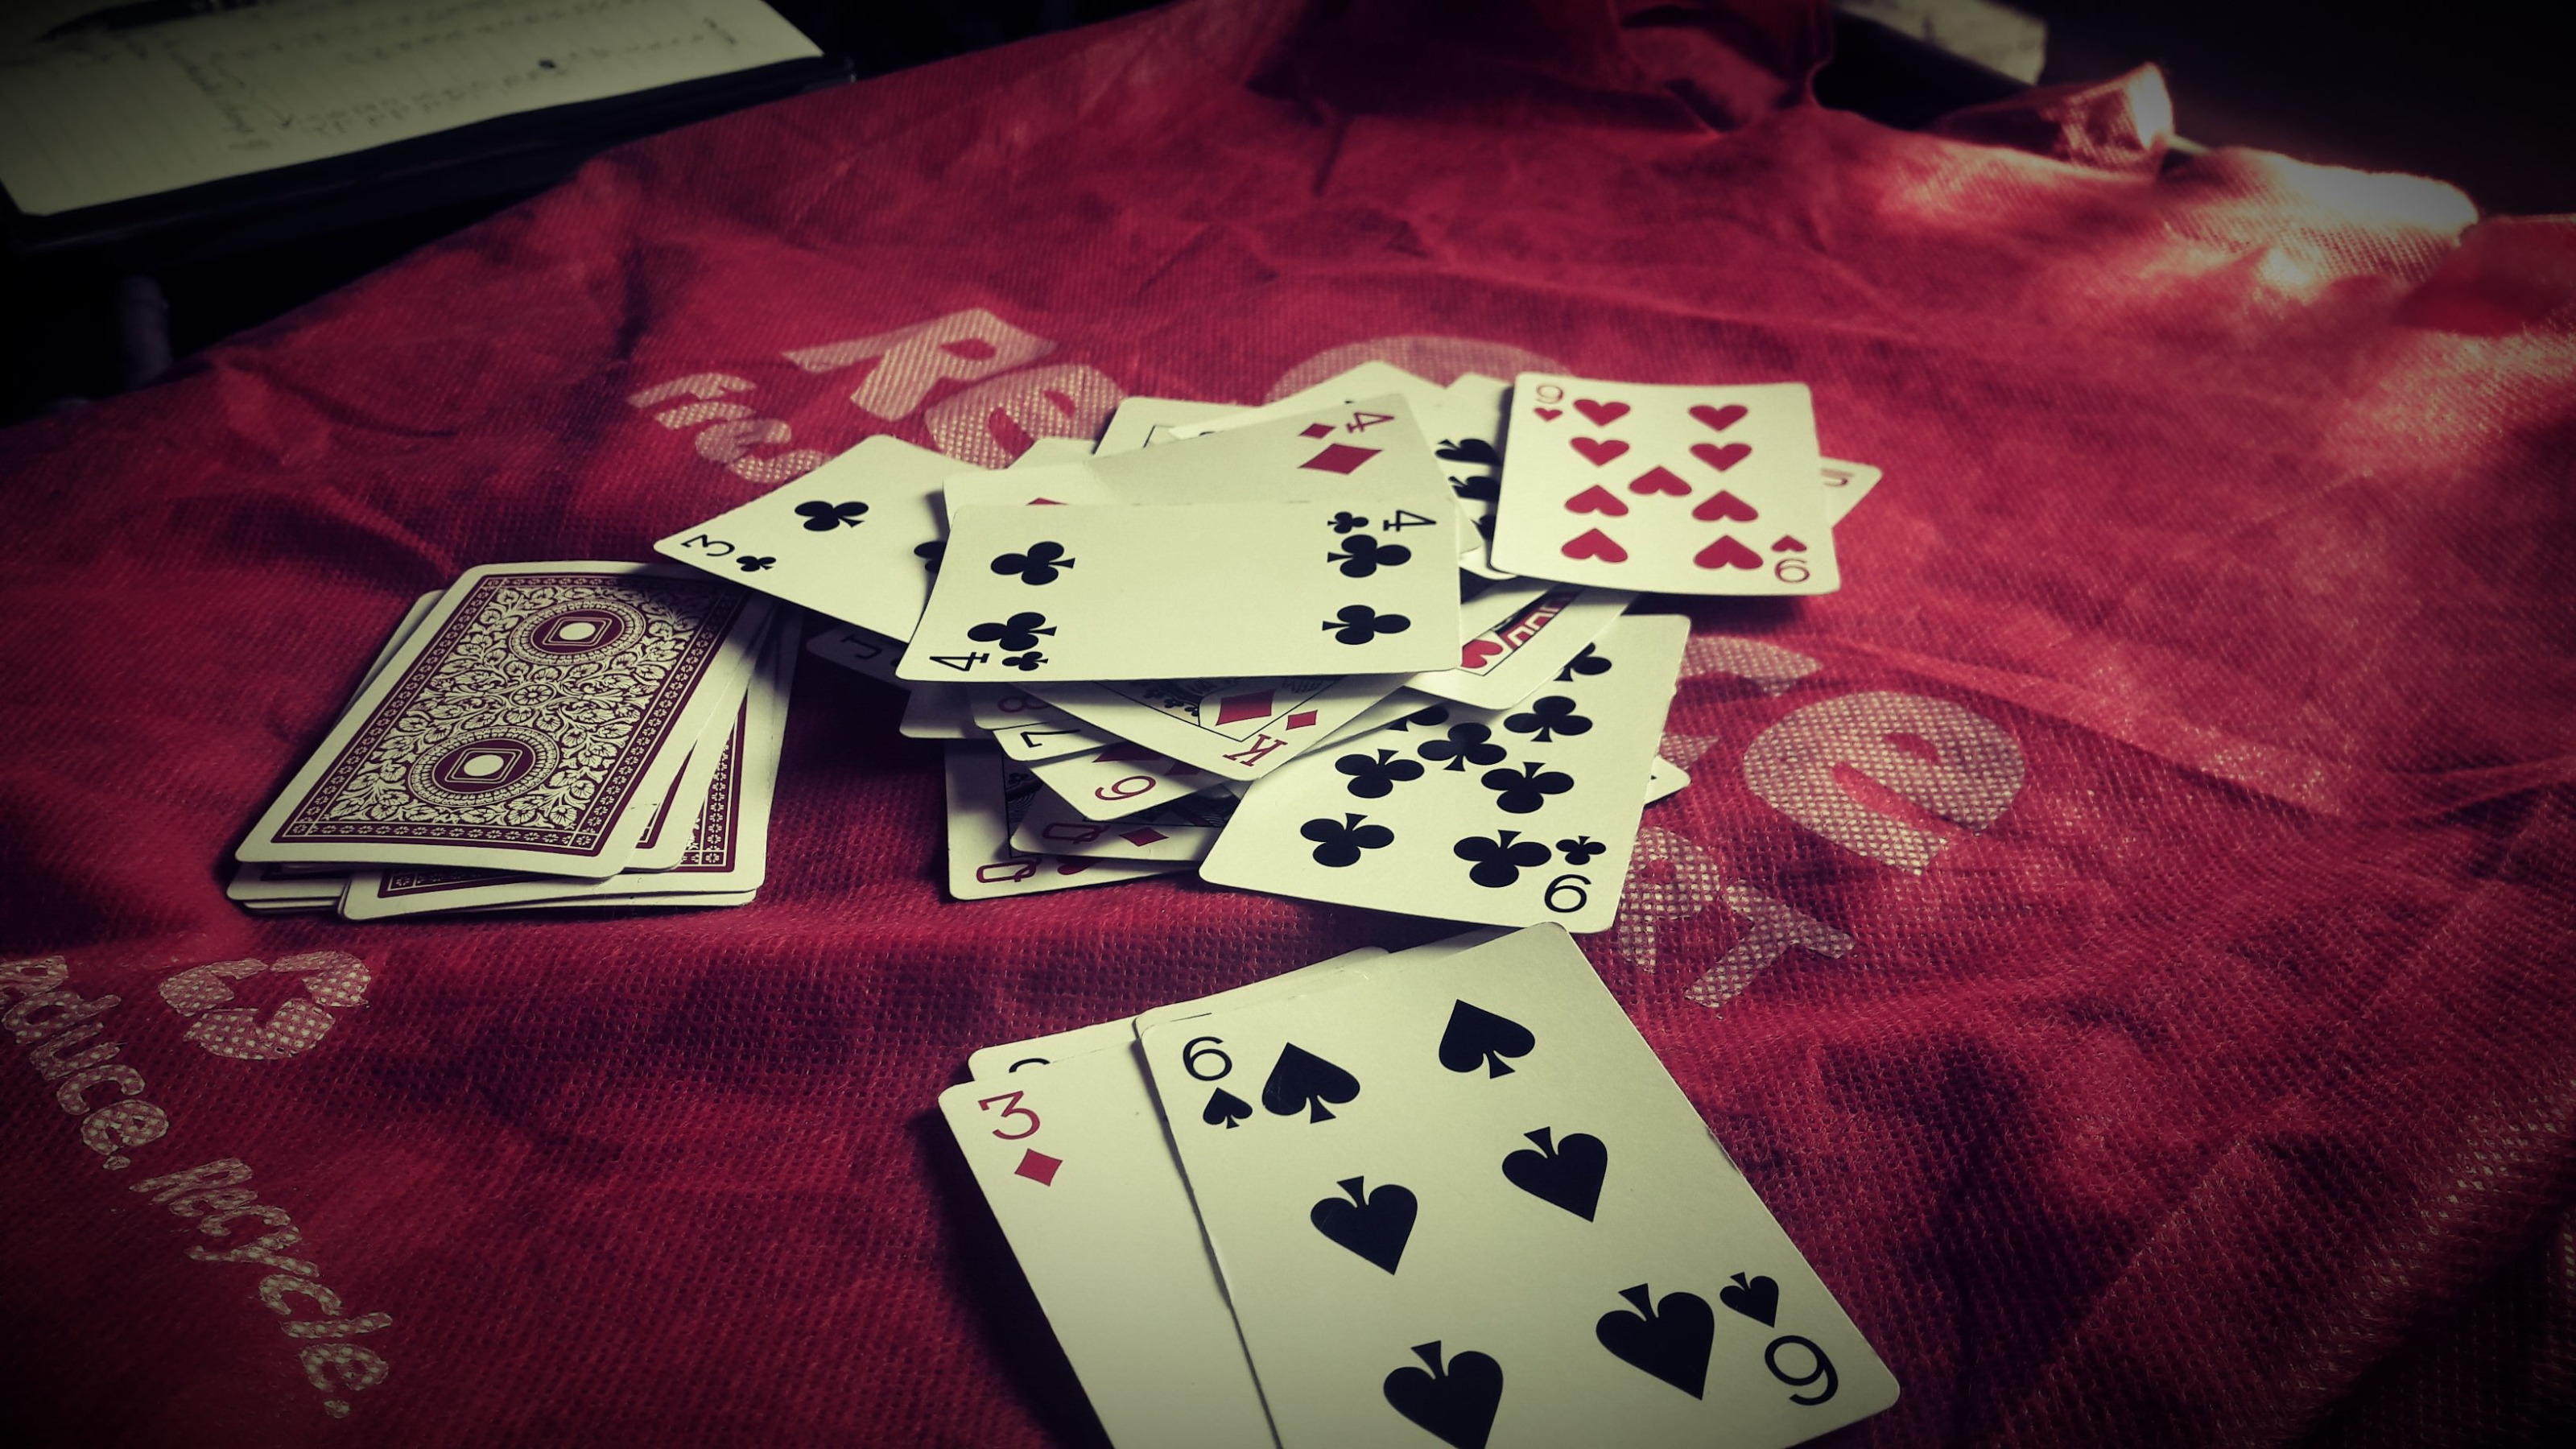 Игры в карты одной колодой. Игральные карты. Карточный стол. Стол для карточных игр. Азартная карточная игра.